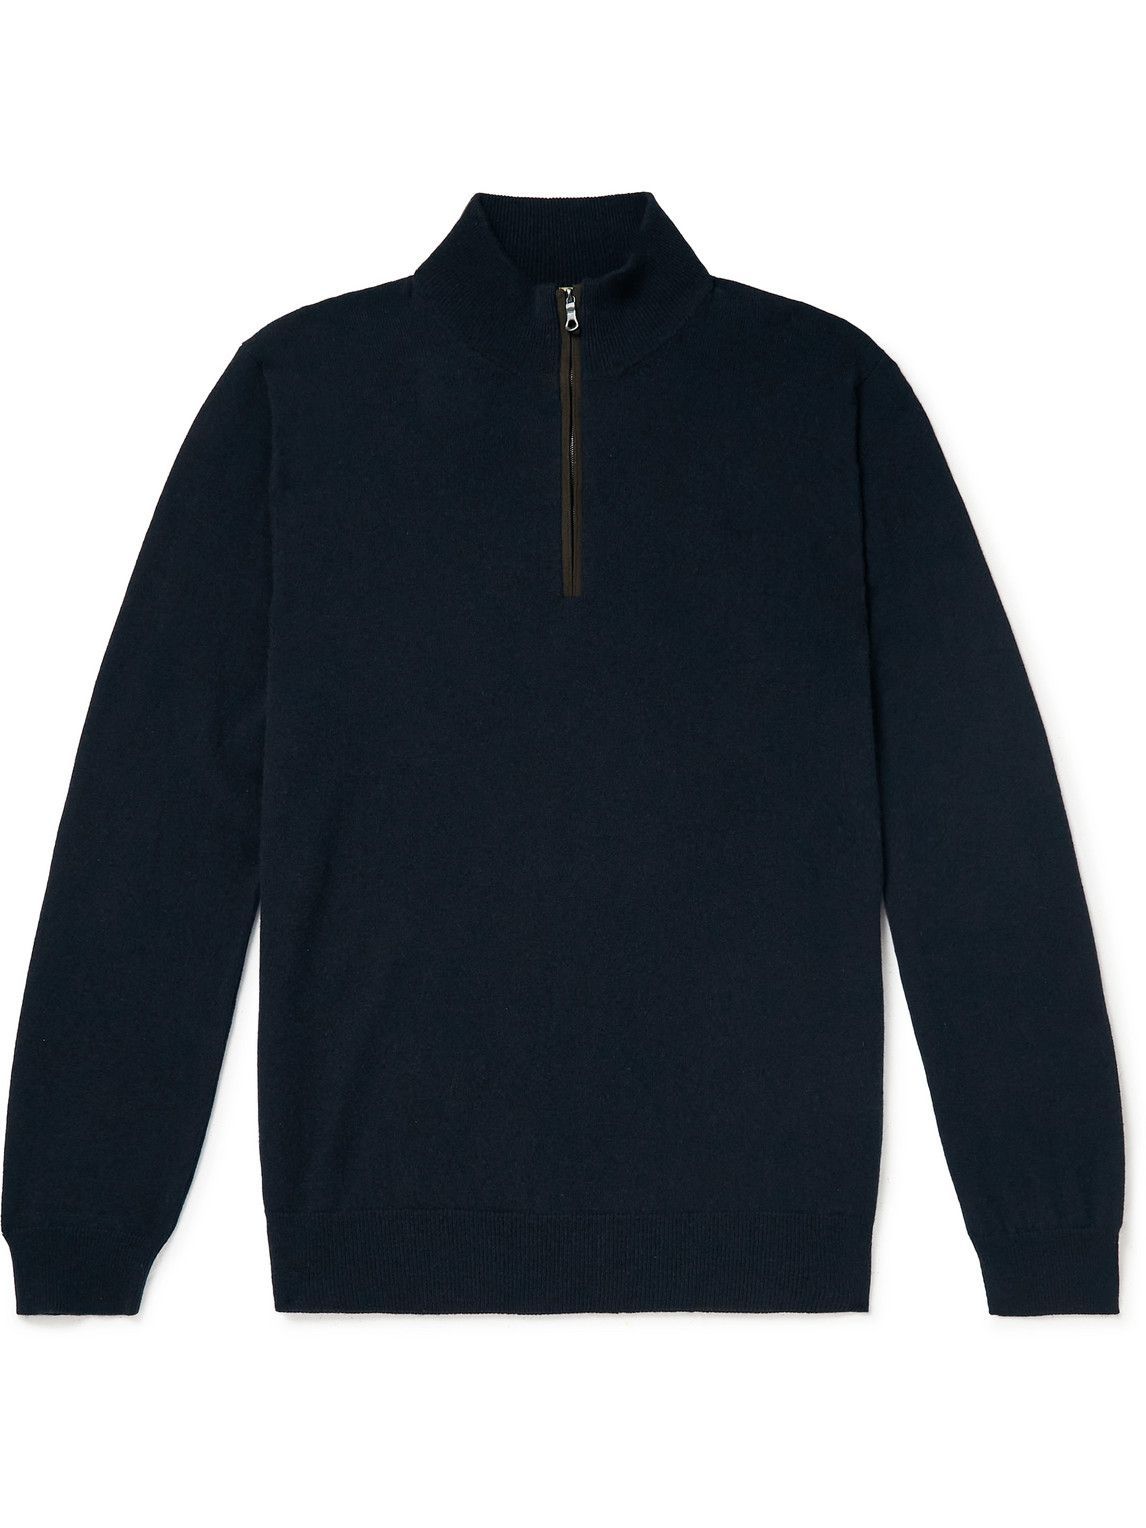 Purdey - Cashmere Half-Zip Sweater - Blue Purdey